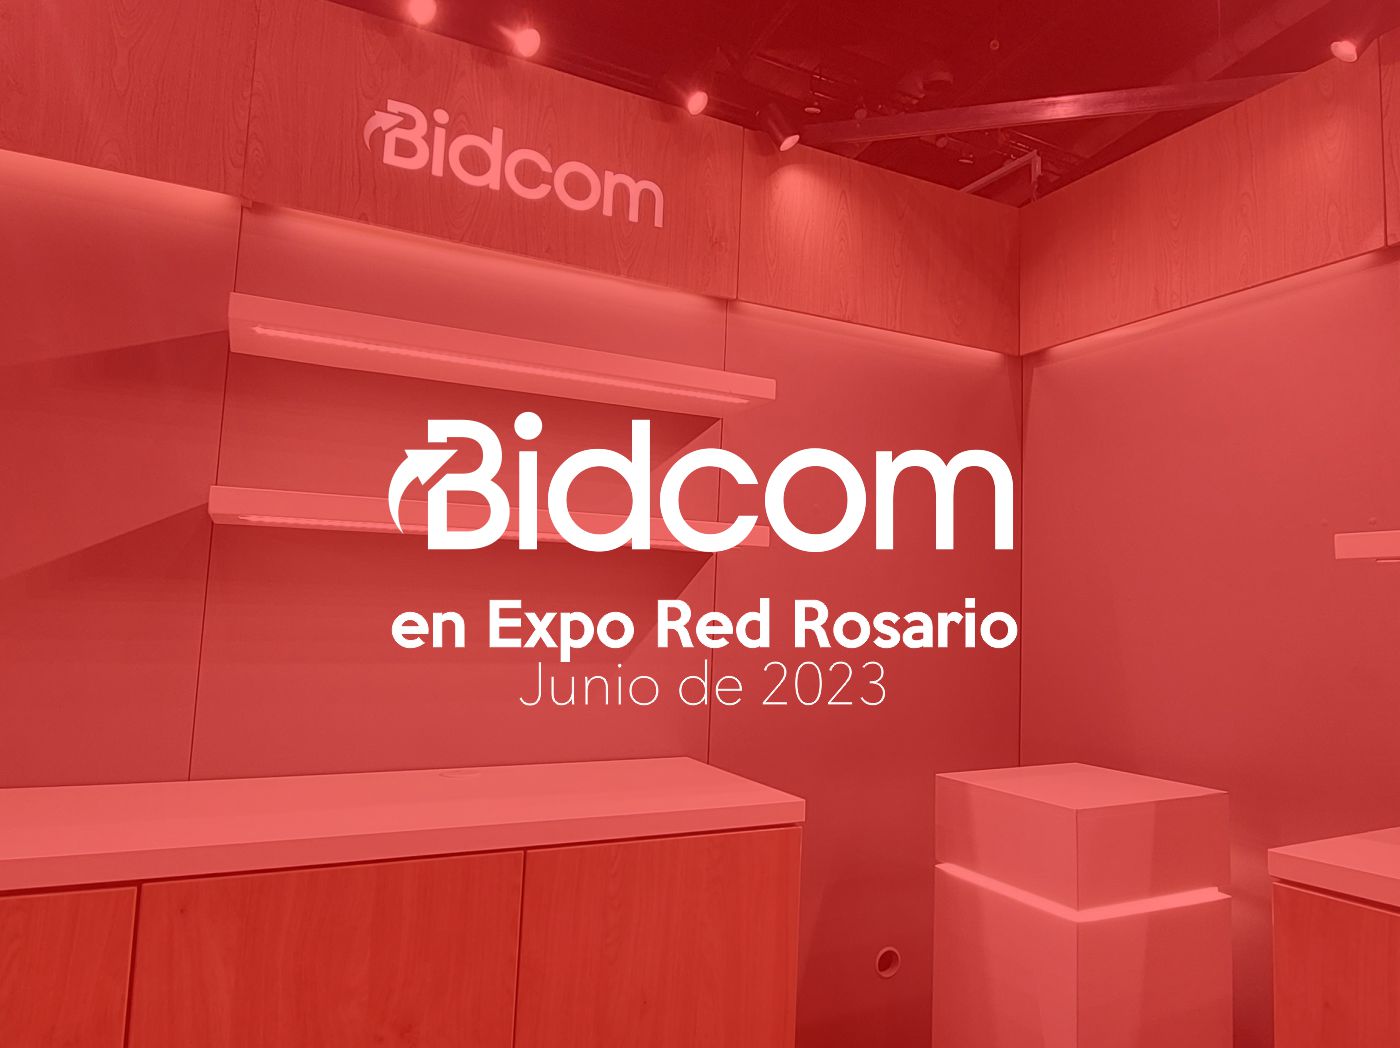 BIDCOM EN EXPO RED ROSARIO 2023